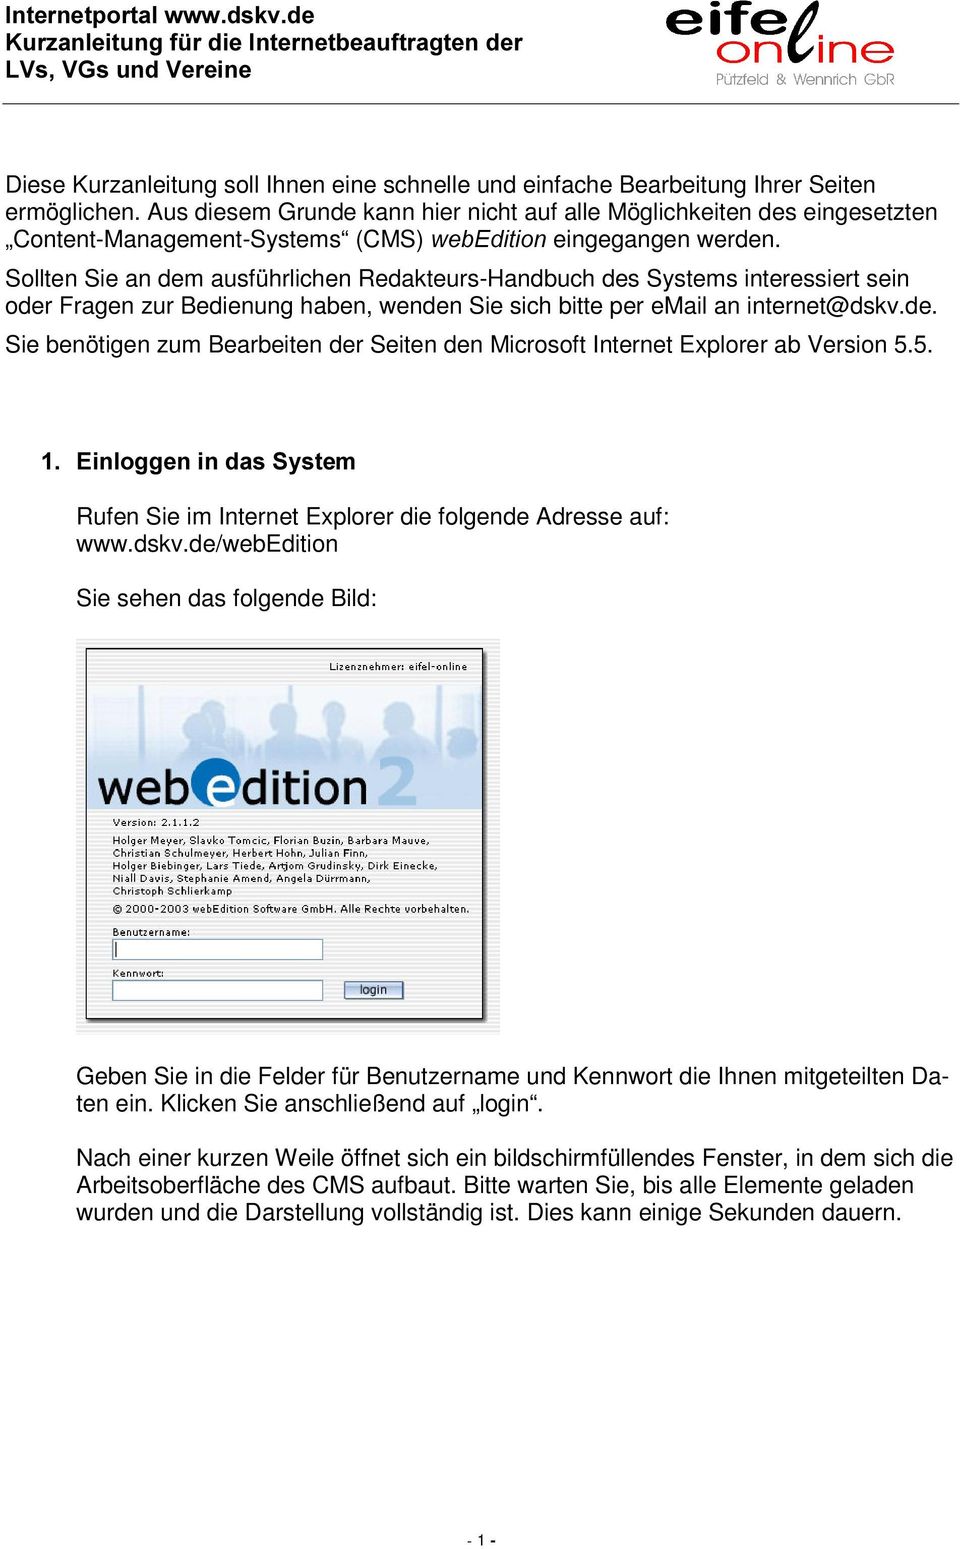 Sollten Sie an dem ausführlichen Redakteurs-Handbuch des Systems interessiert sein oder Fragen zur Bedienung haben, wenden Sie sich bitte per email an internet@dskv.de. Sie benötigen zum Bearbeiten der Seiten den Microsoft Internet Explorer ab Version 5.